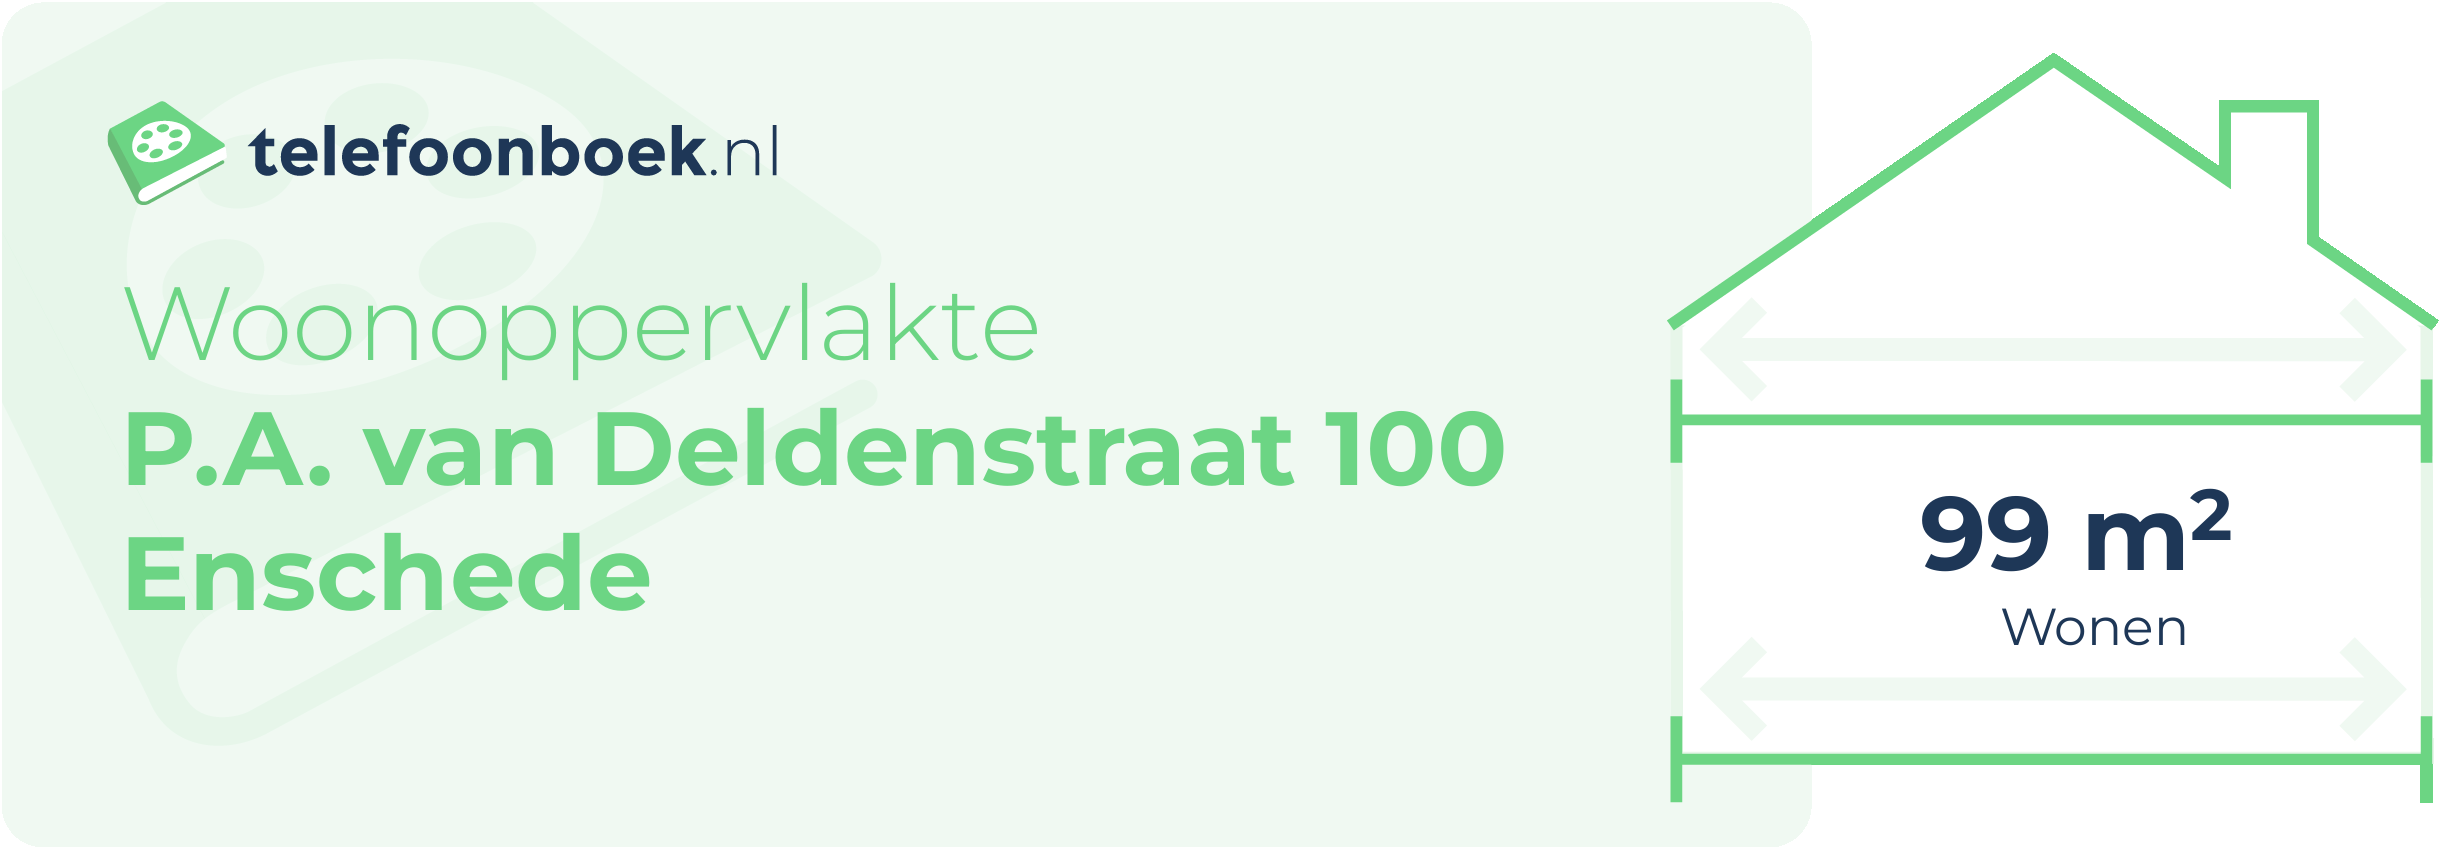 Woonoppervlakte P.A. Van Deldenstraat 100 Enschede